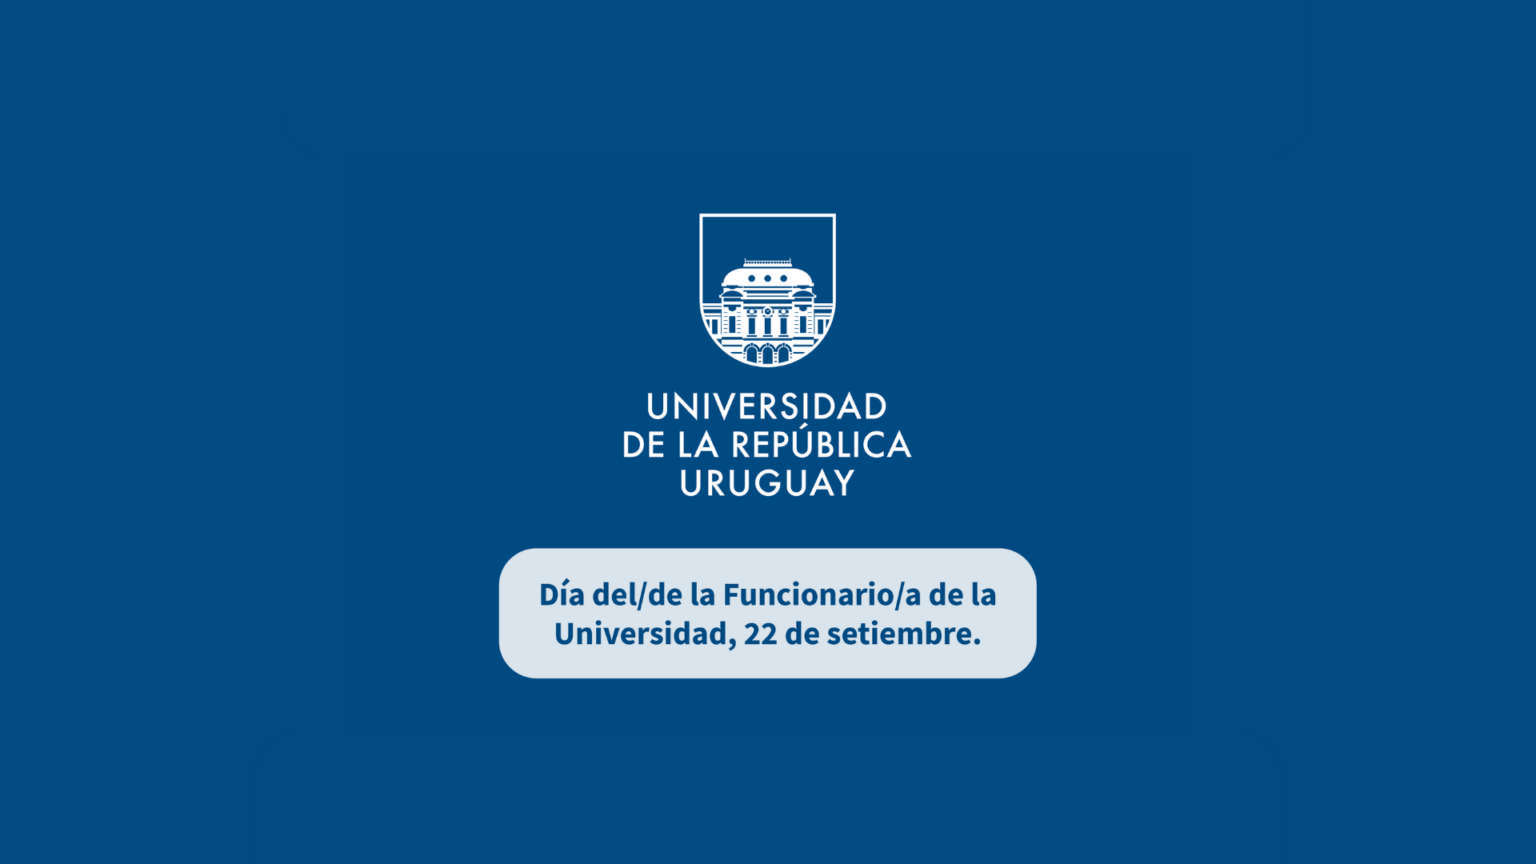 Imagen con fondo azul y logo de Udelar sobre impreso con texto en recuadro color blanco y puntas redondeadas donde se puede leer: "Día del/de la Funcionario/a de la Universidad, 22 de setiembre."